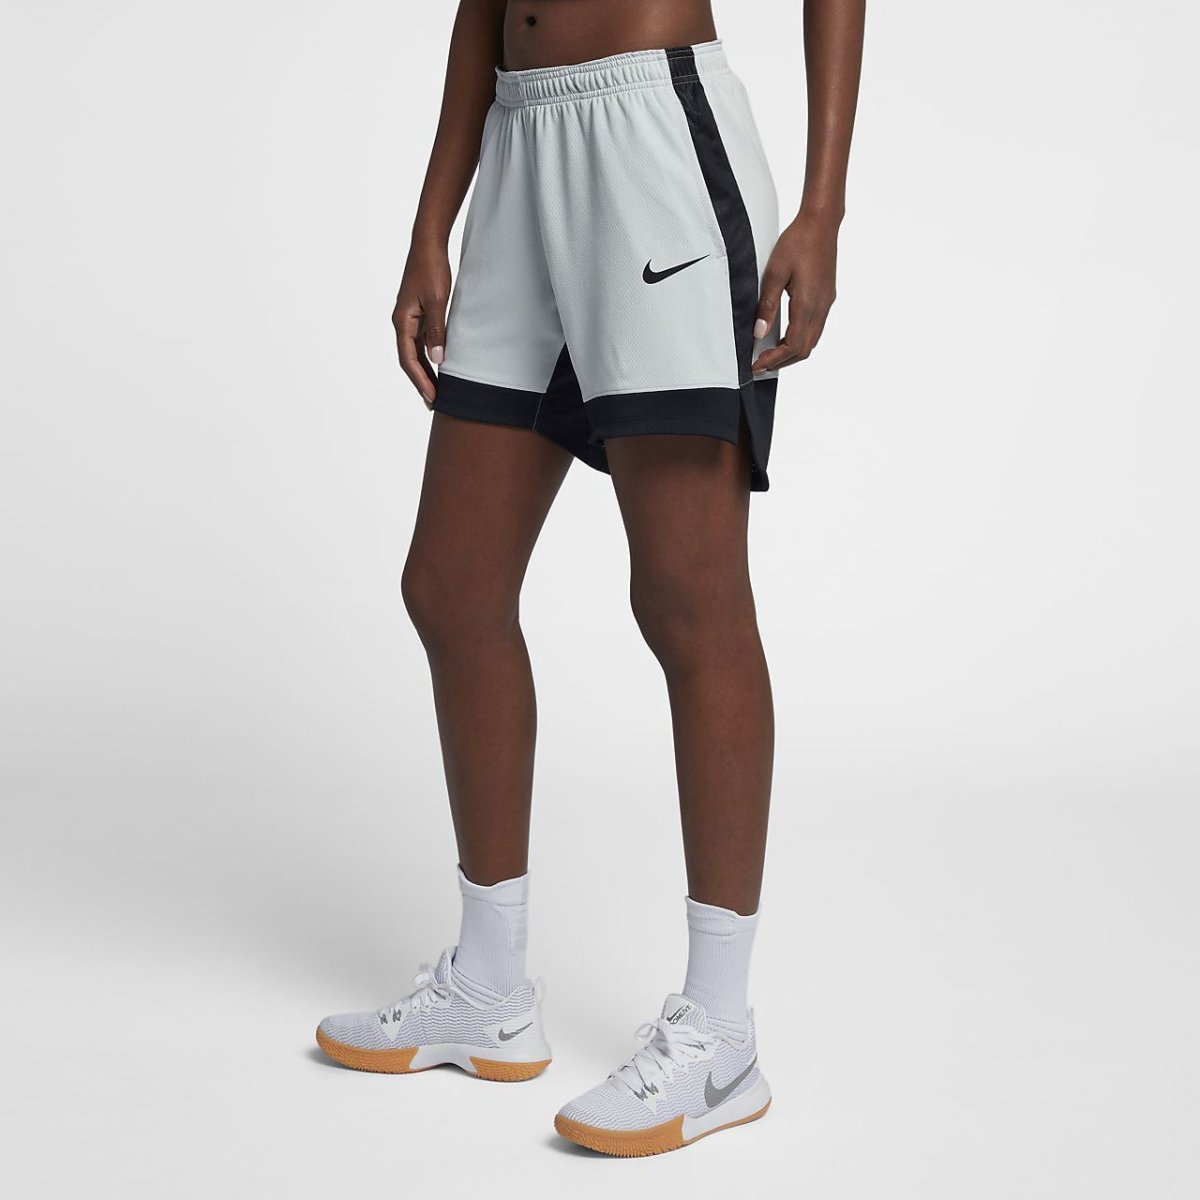 Шорты Nike Swoosh черные